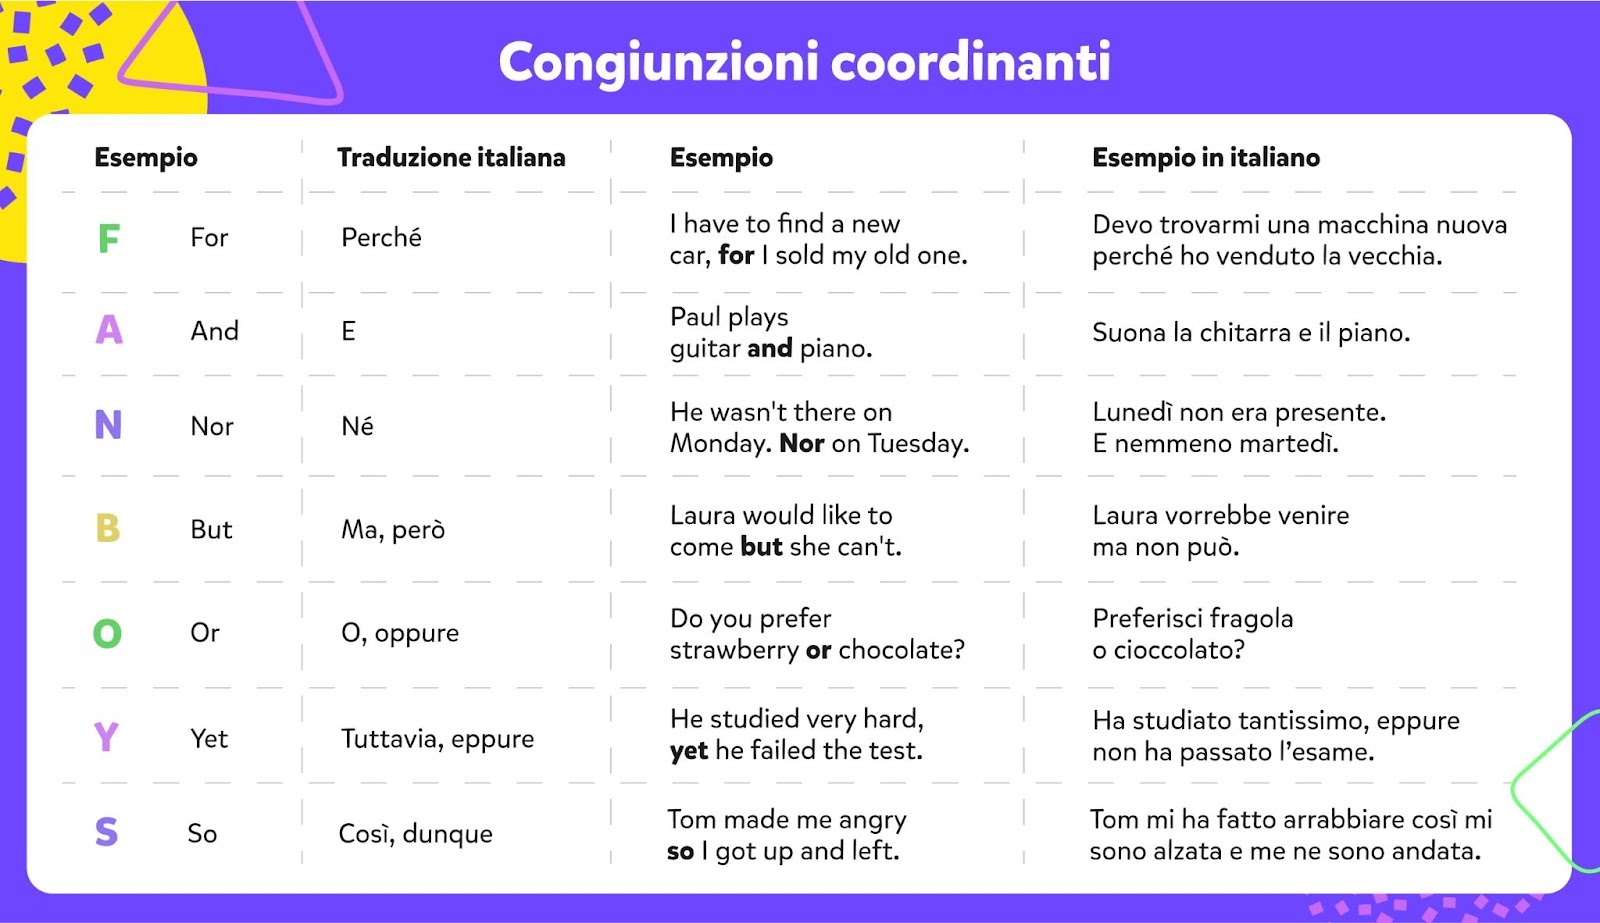 Congiunzioni coordinanti in inglese, esempi in inglese, in italiano.